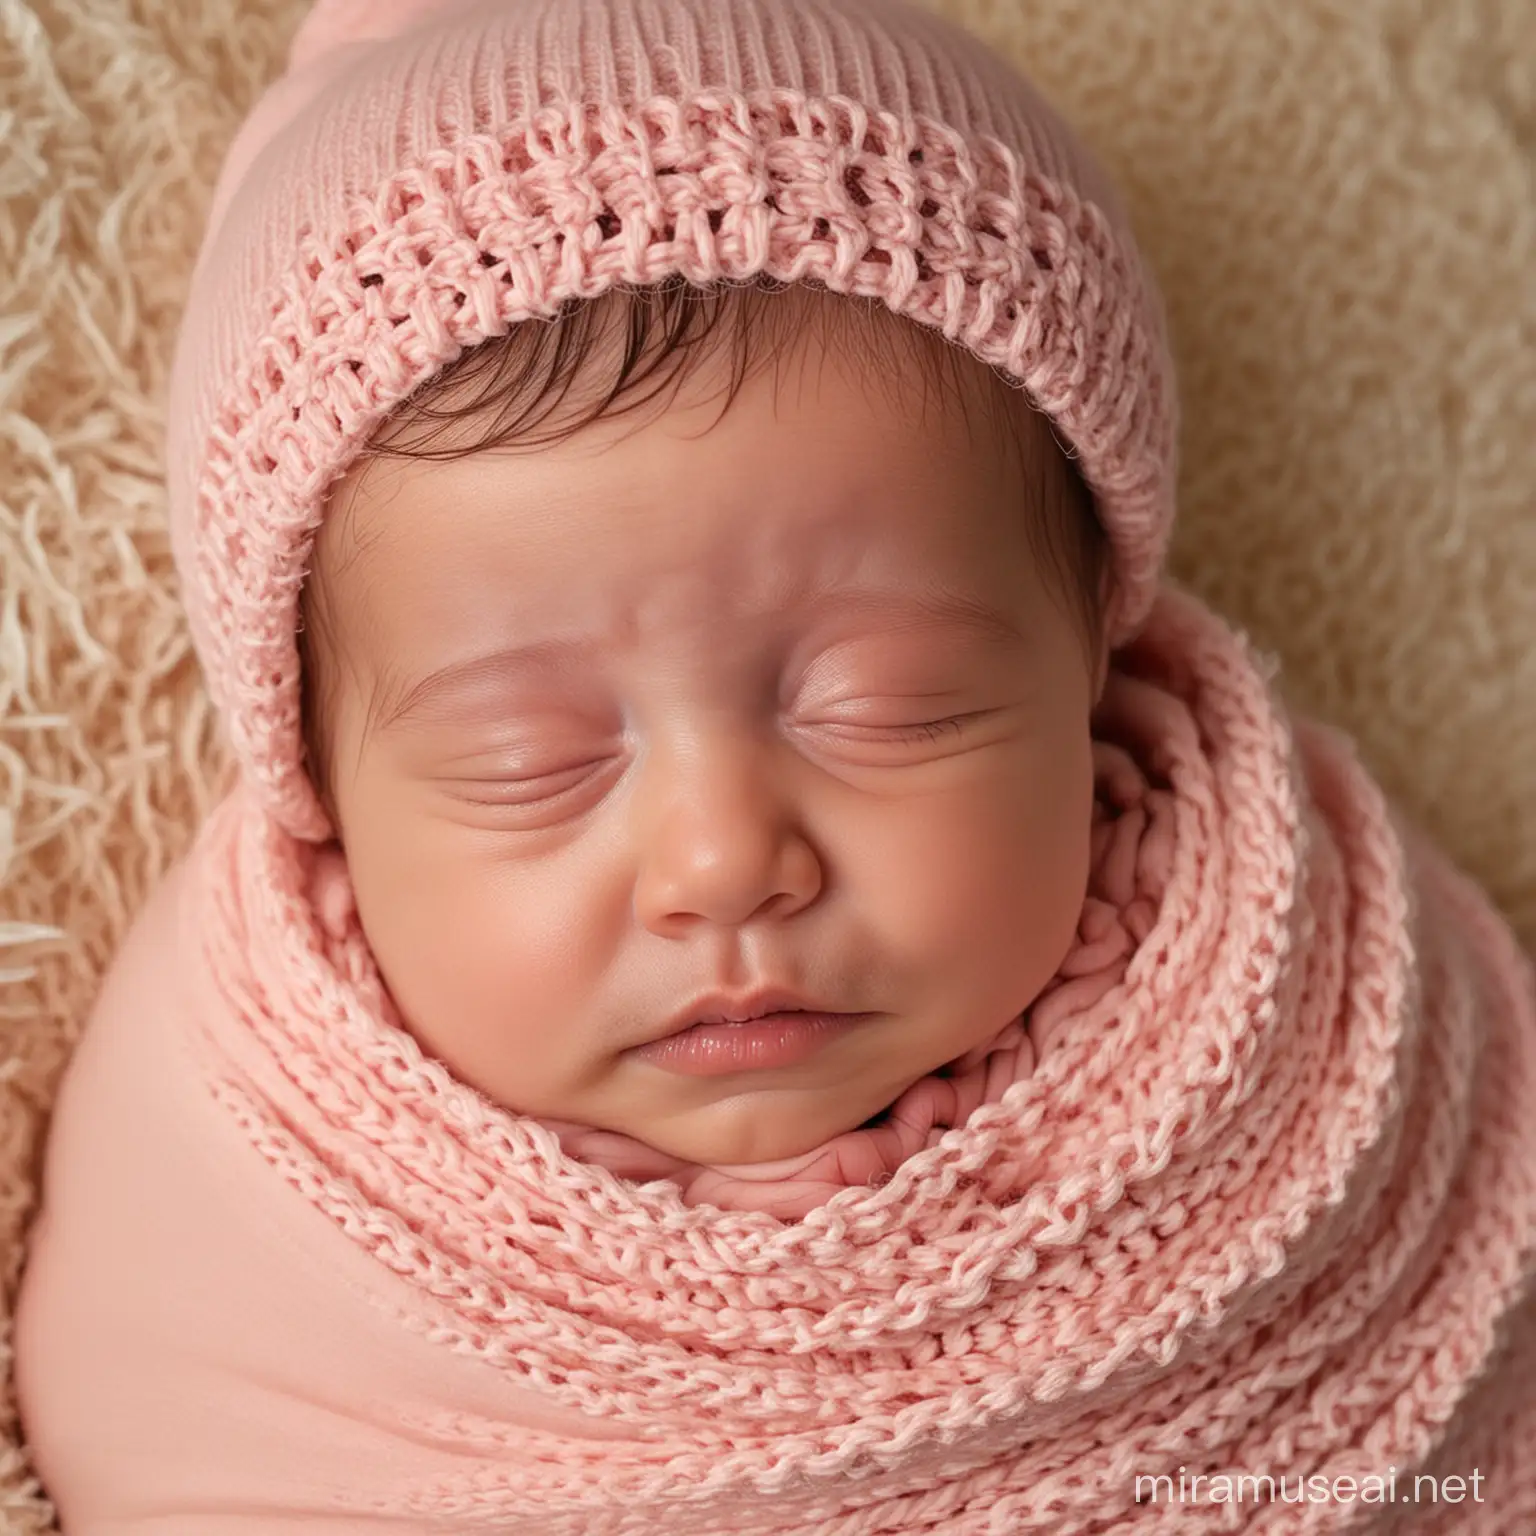 Adorable Newborn Baby in Cozy Blanket